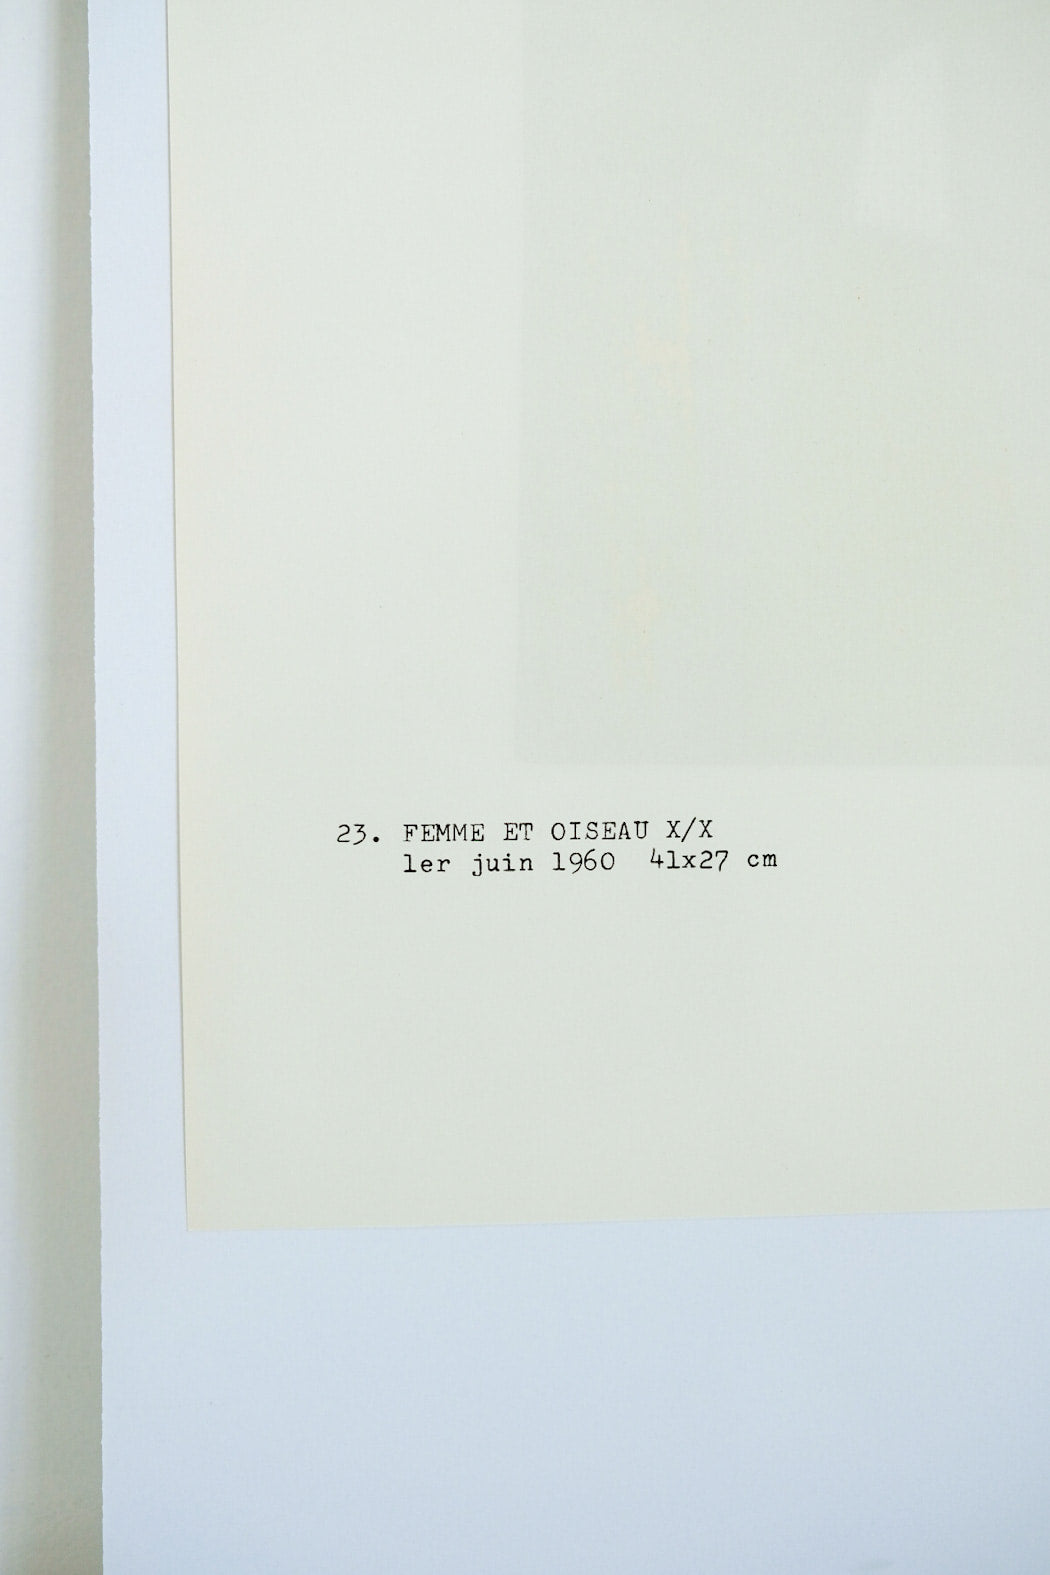 Joan Miro FEMME ET OISEAU X/X Plate #23